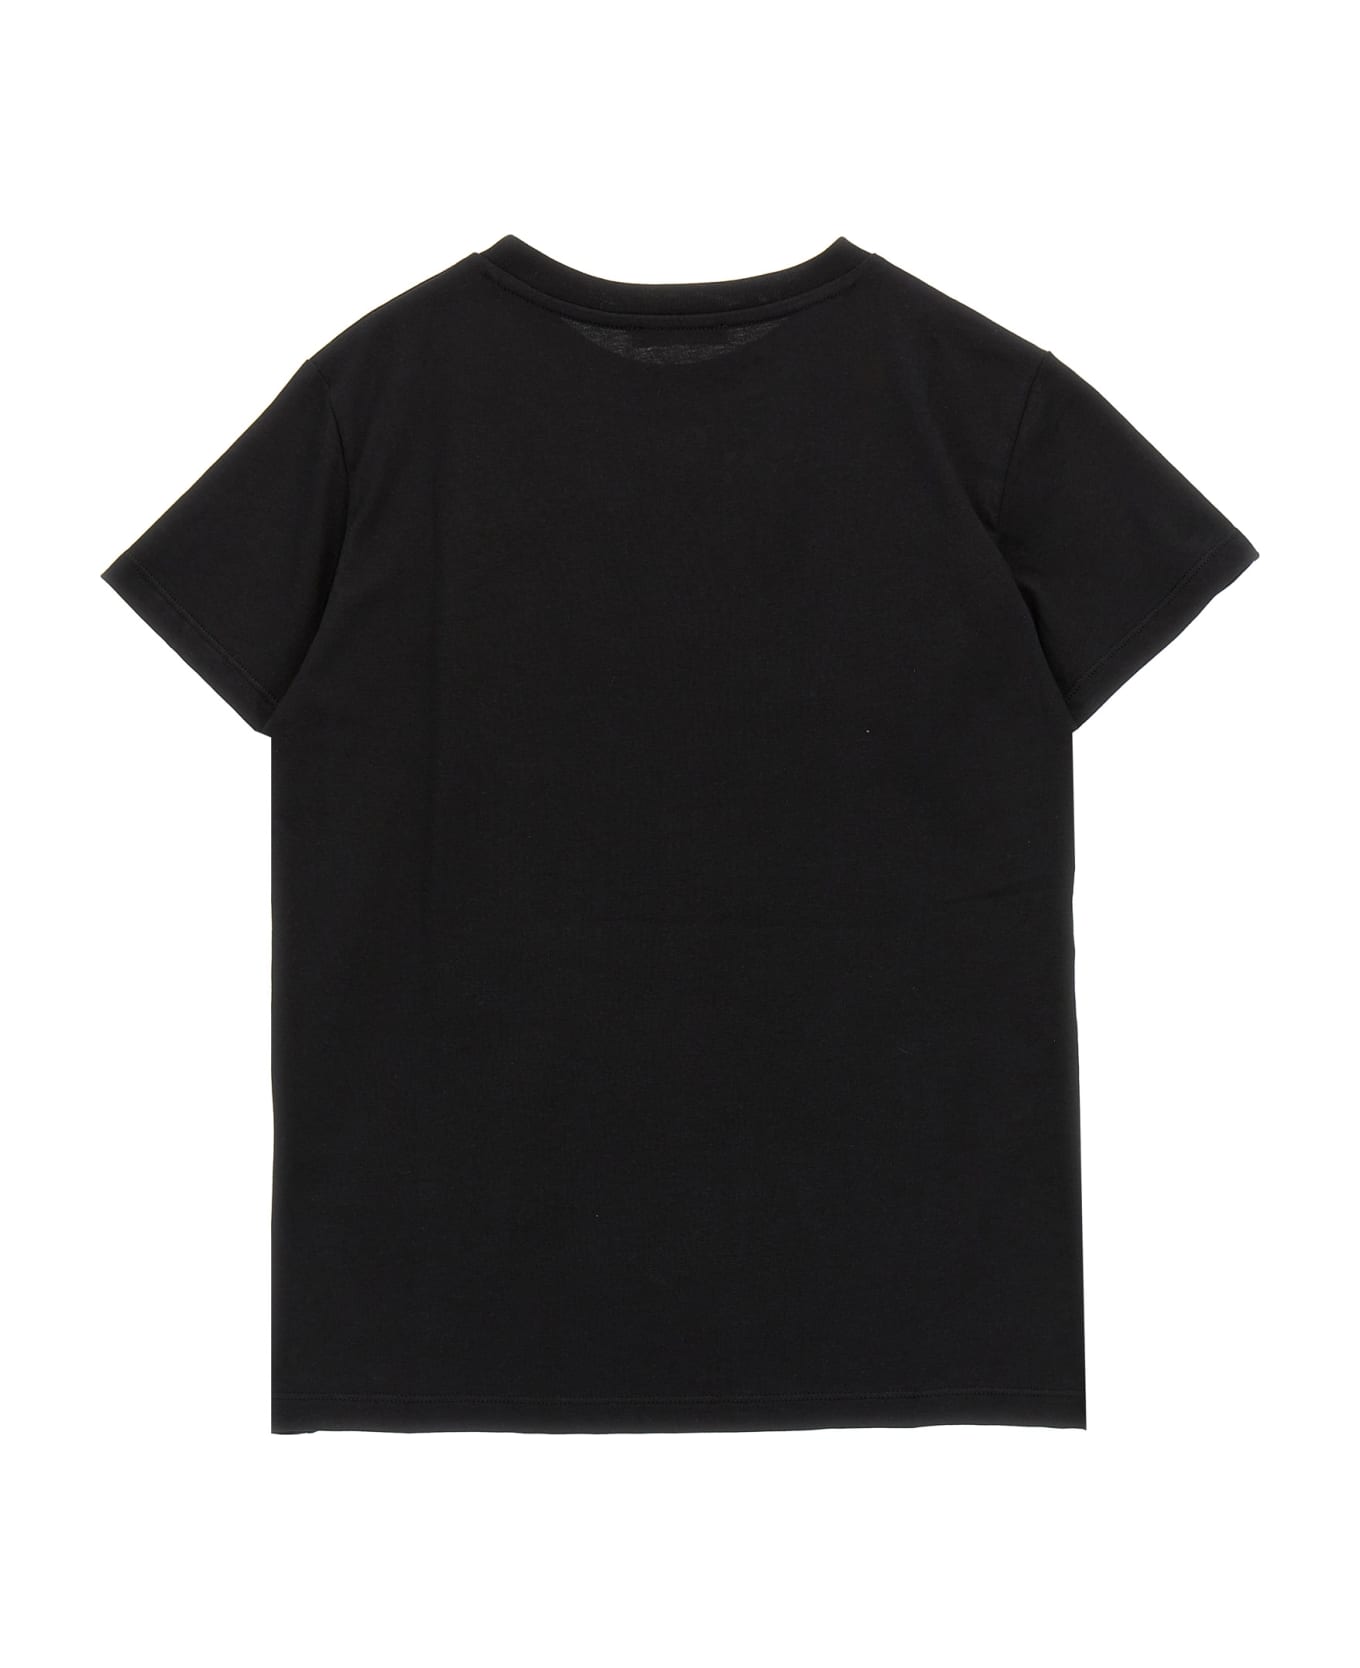 Balmain Logo Print T-shirt - White/Black Tシャツ＆ポロシャツ